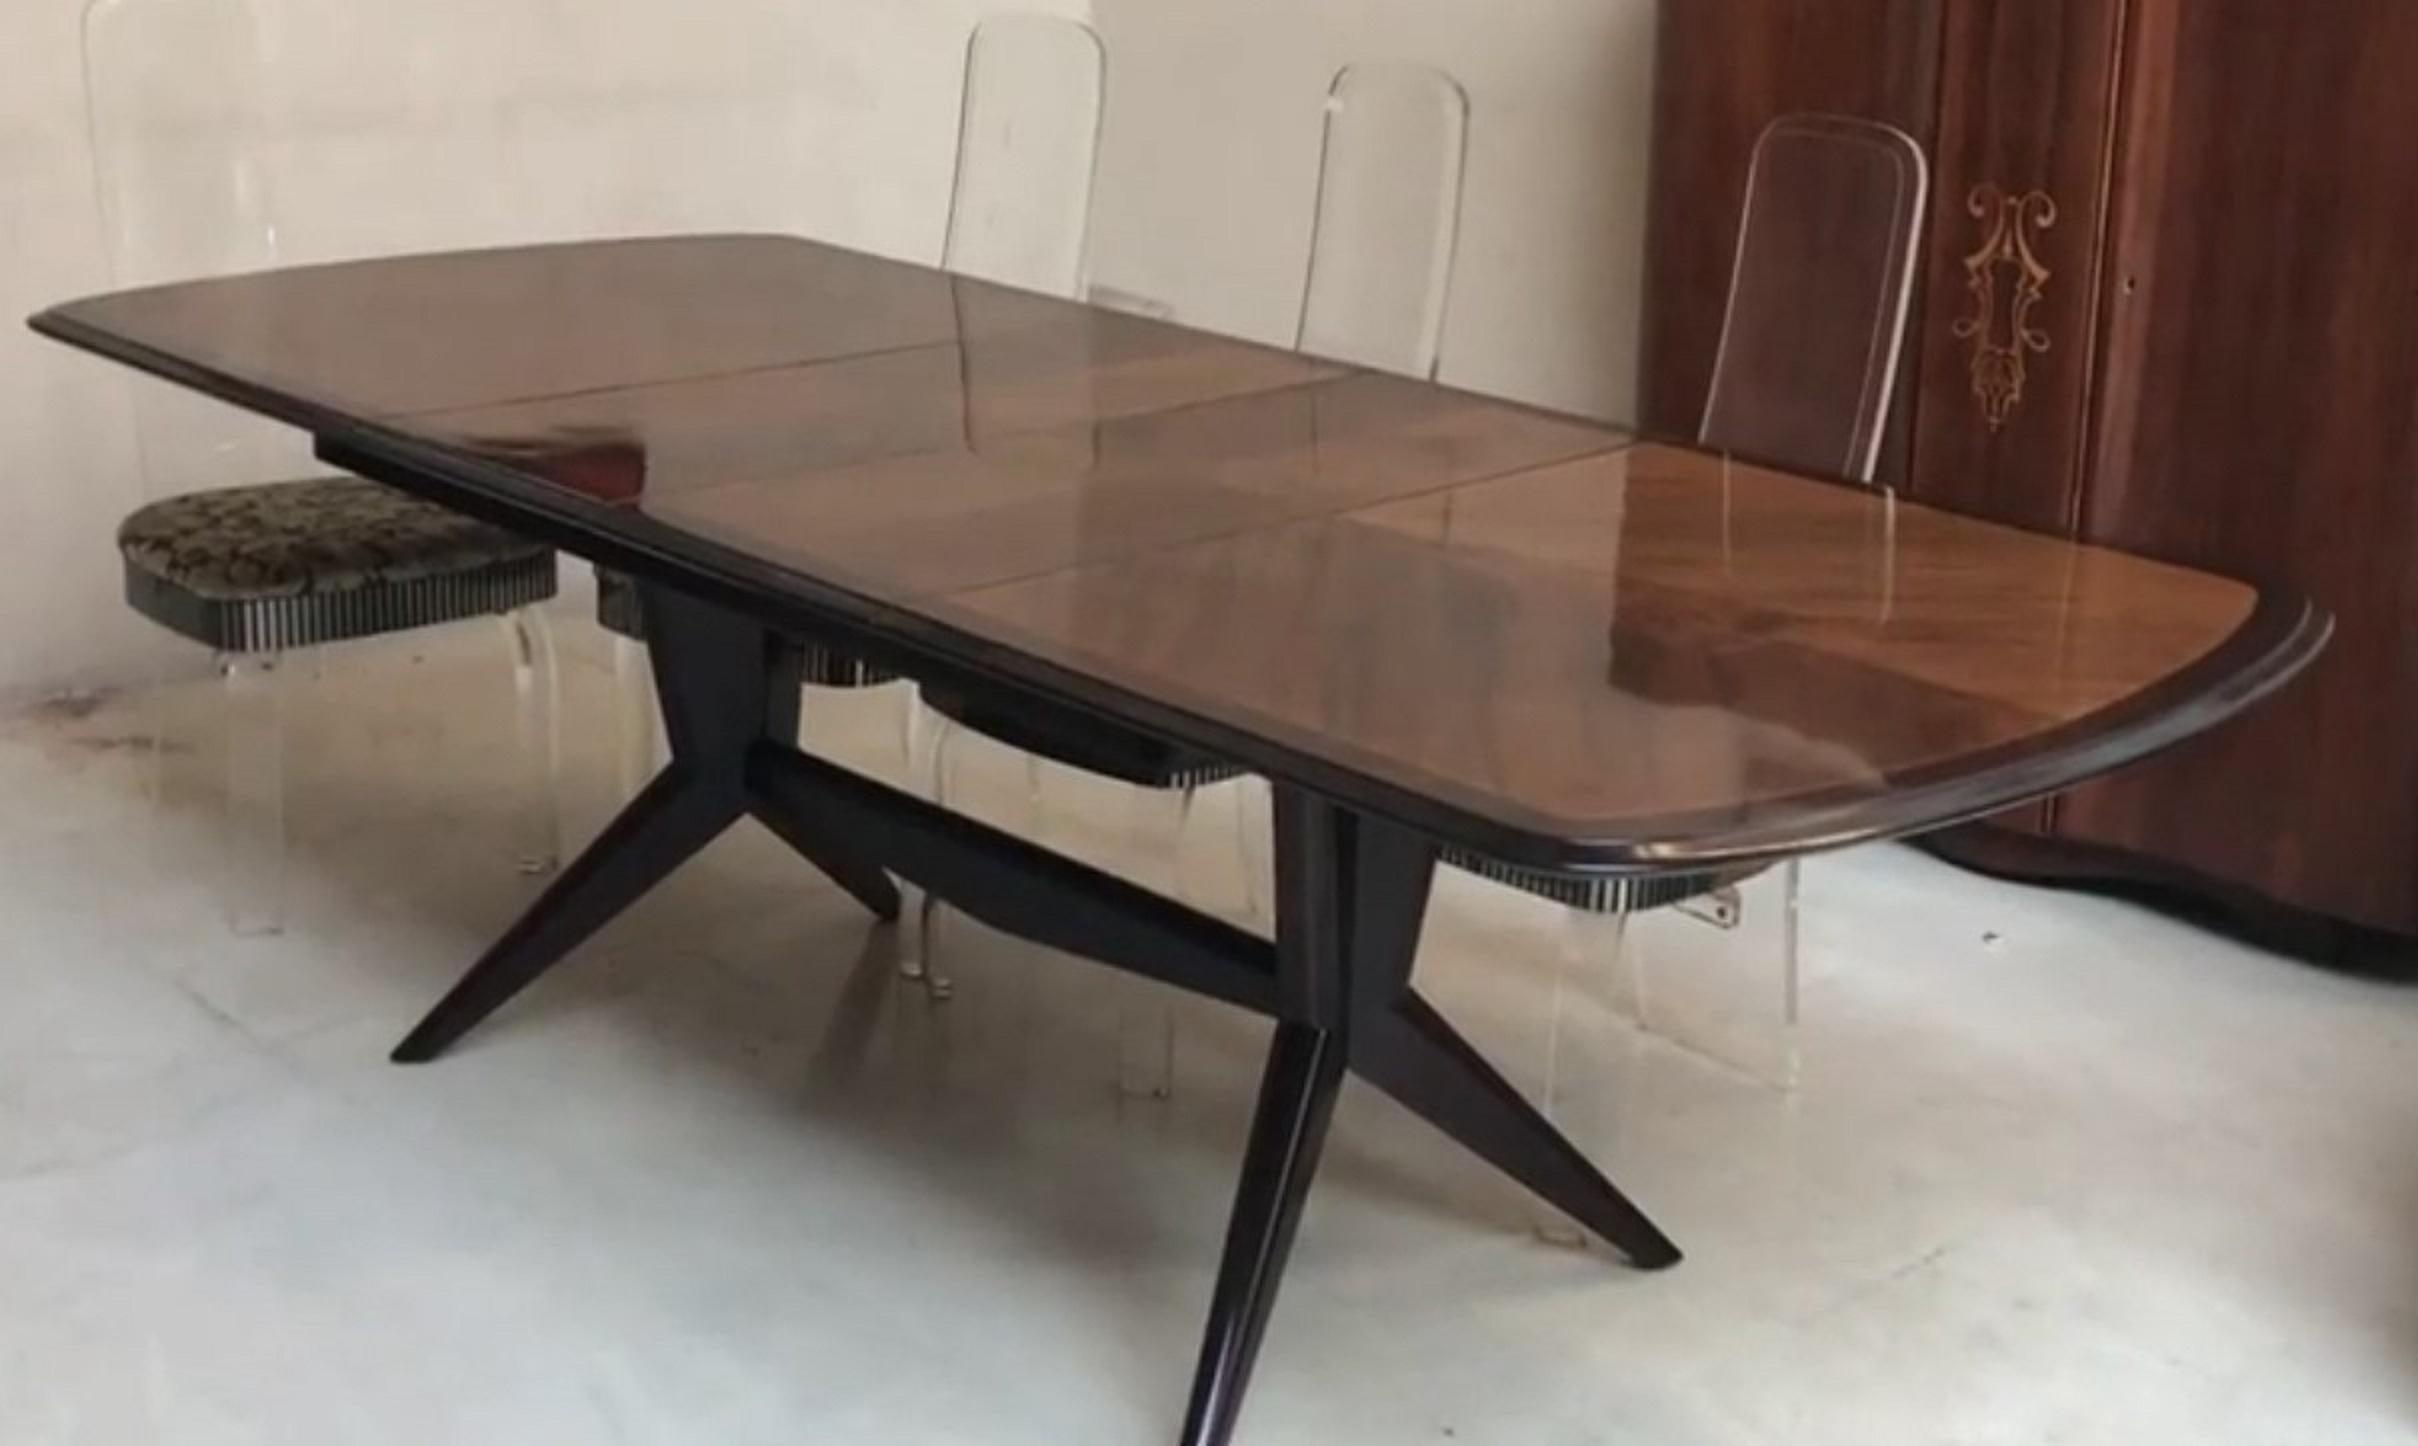 Tabelle

Jahr: 1960
Land: Italienisch
Holz 
Es ist ein eleganter und anspruchsvoller Tisch.
Wenn Sie in den goldenen Jahren leben wollen, ist dies der  Tabelle, die Ihr Projekt benötigt.
Seit 1982 haben wir uns auf den Verkauf von Art Deco und